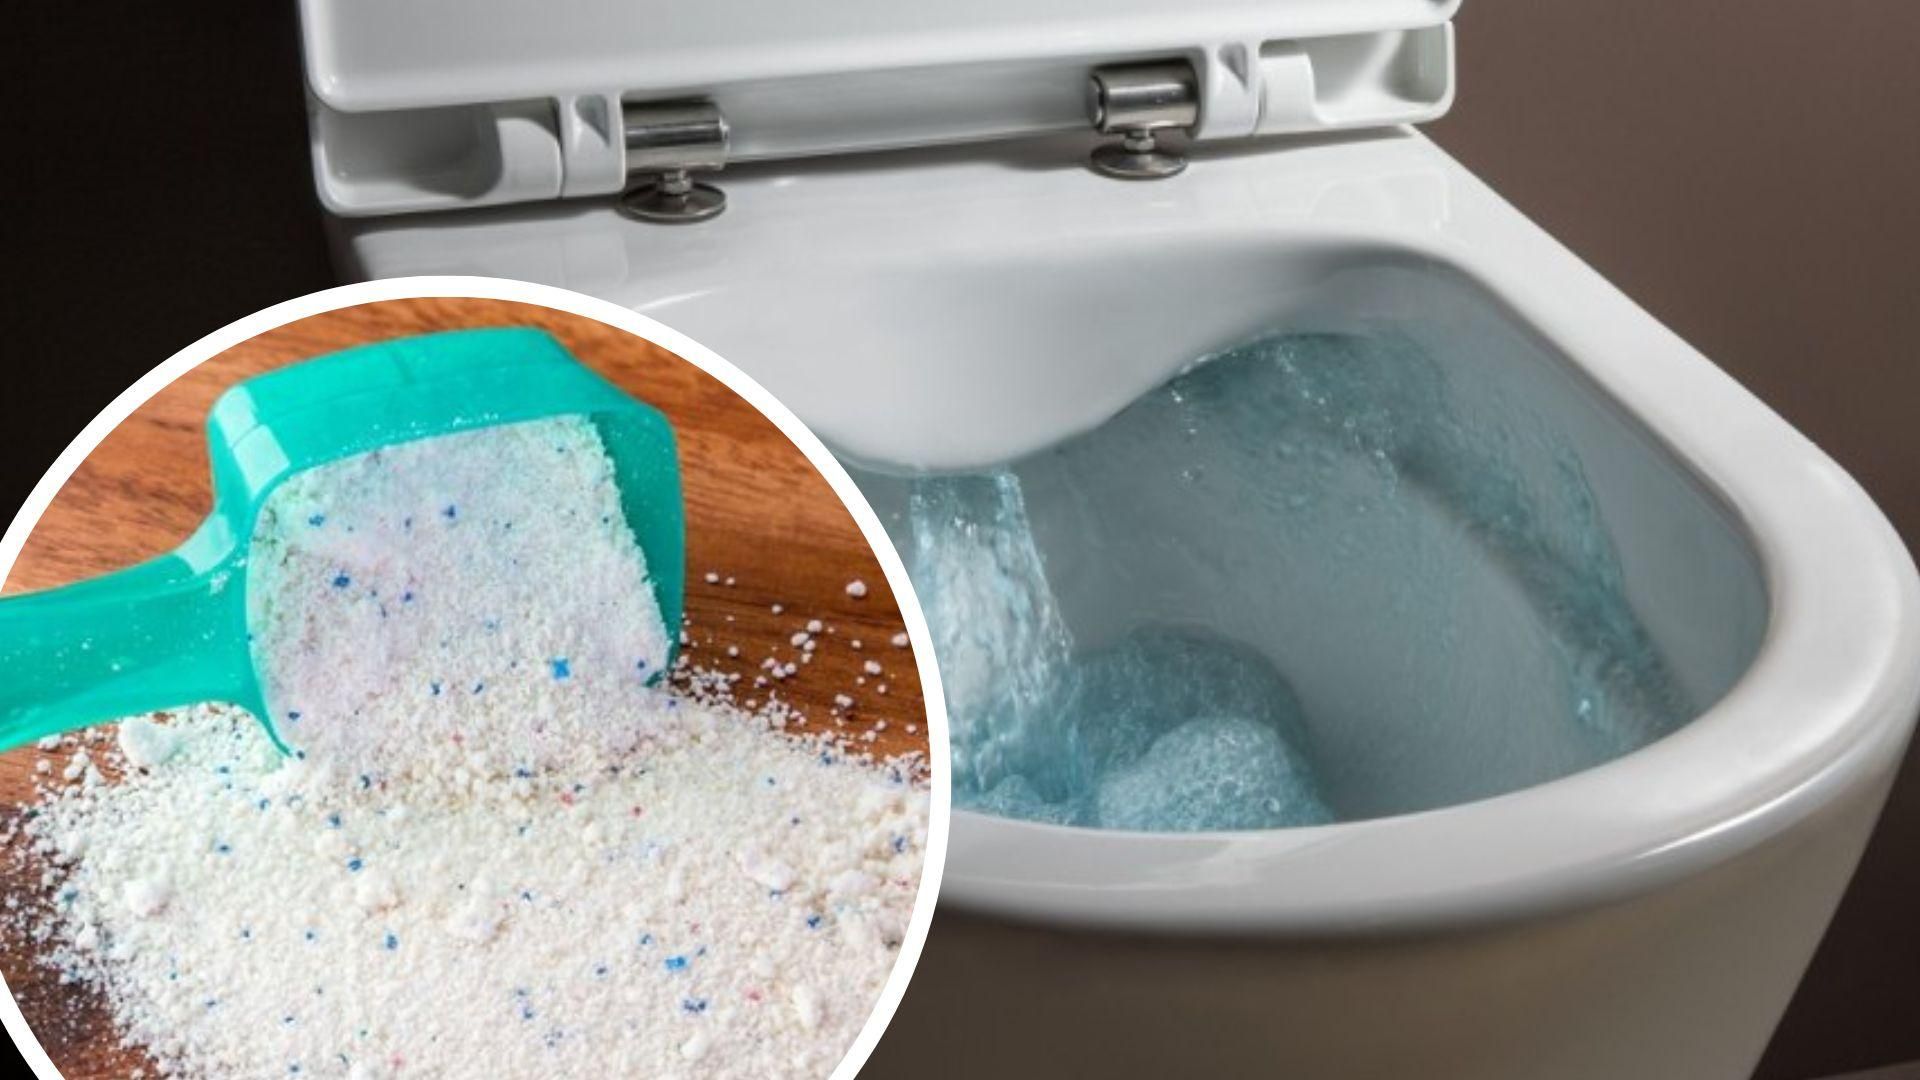 Як очистити унітаз в домашніх умовах – лайфхак, пральний порошок в унітаз